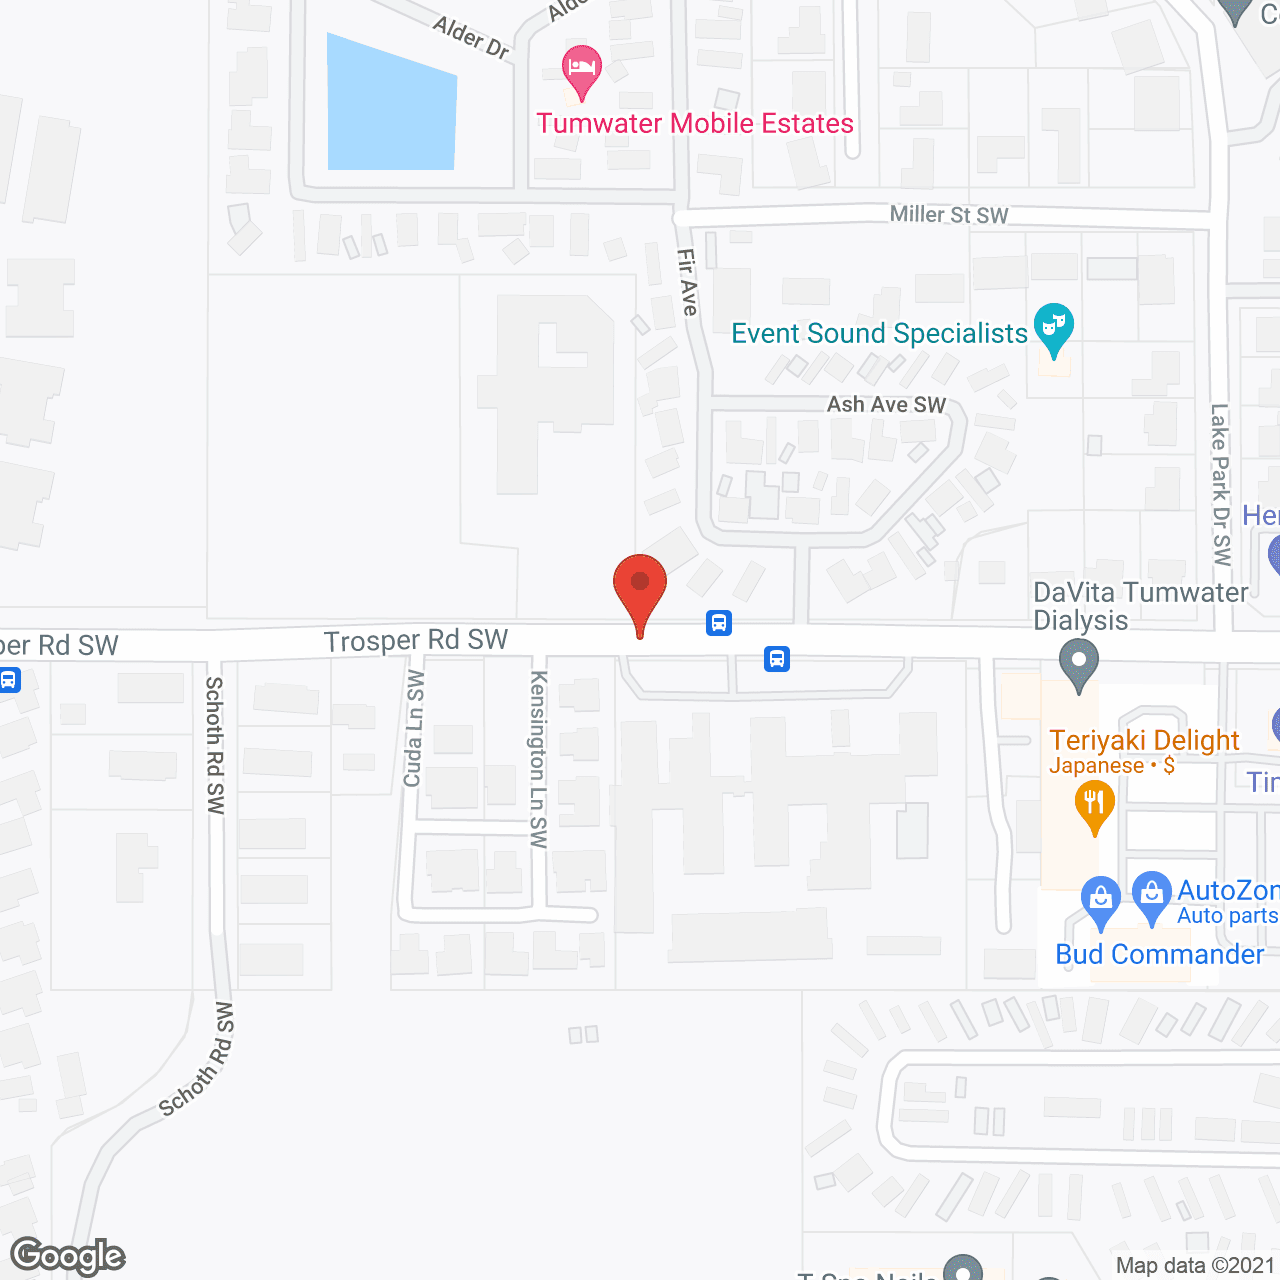 The Hampton in google map